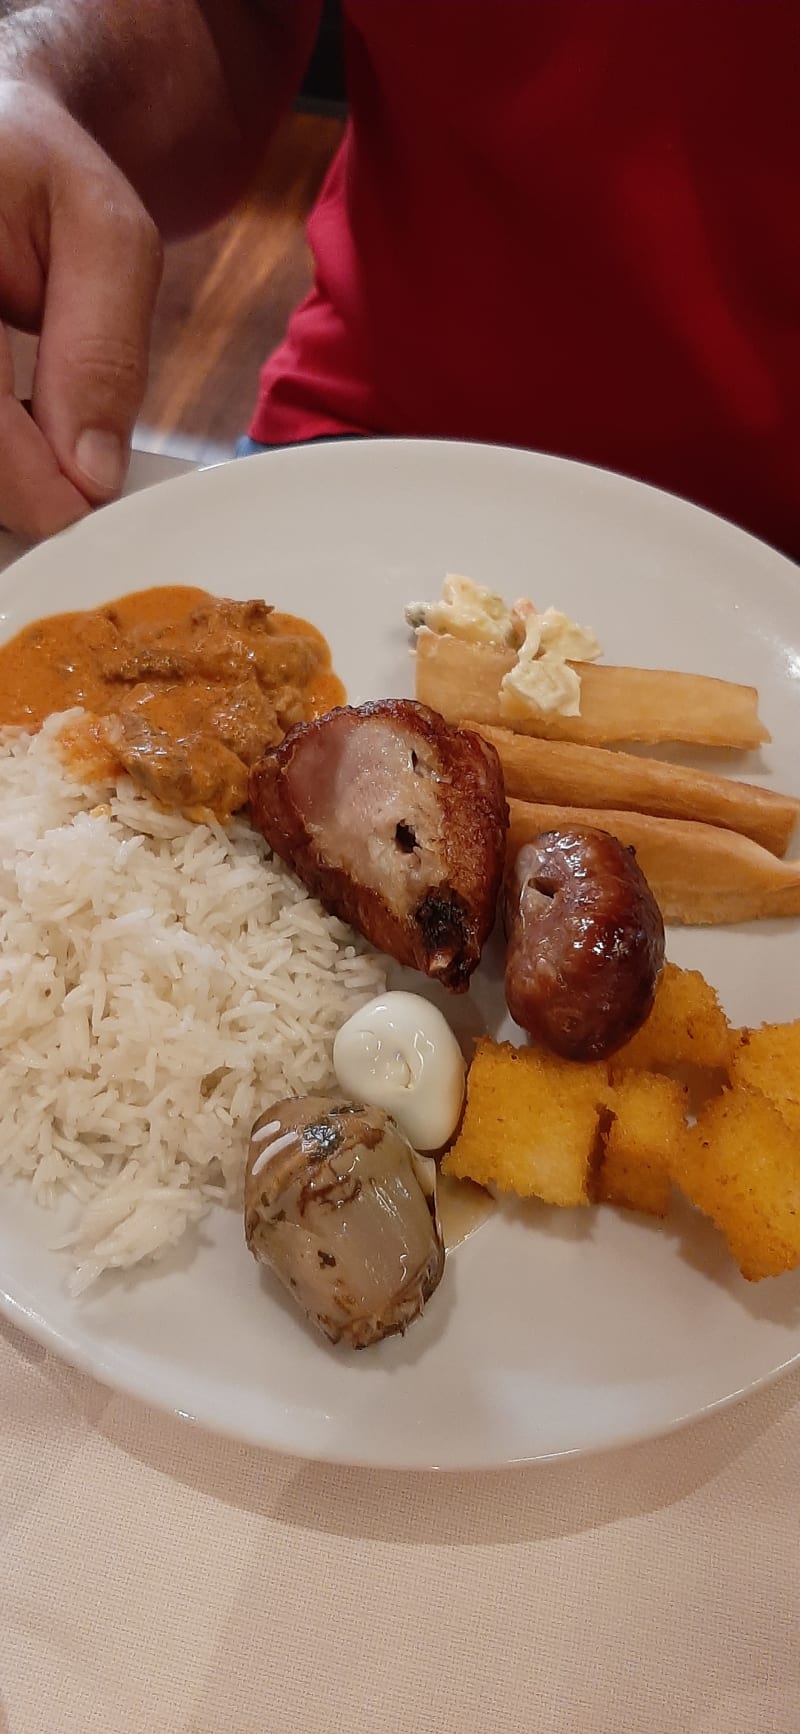 Riso, uova di quaglia, polenta fritta e jucca - Churrascaria Ristorante Porto Alegre Brasiliano di carne, Verona